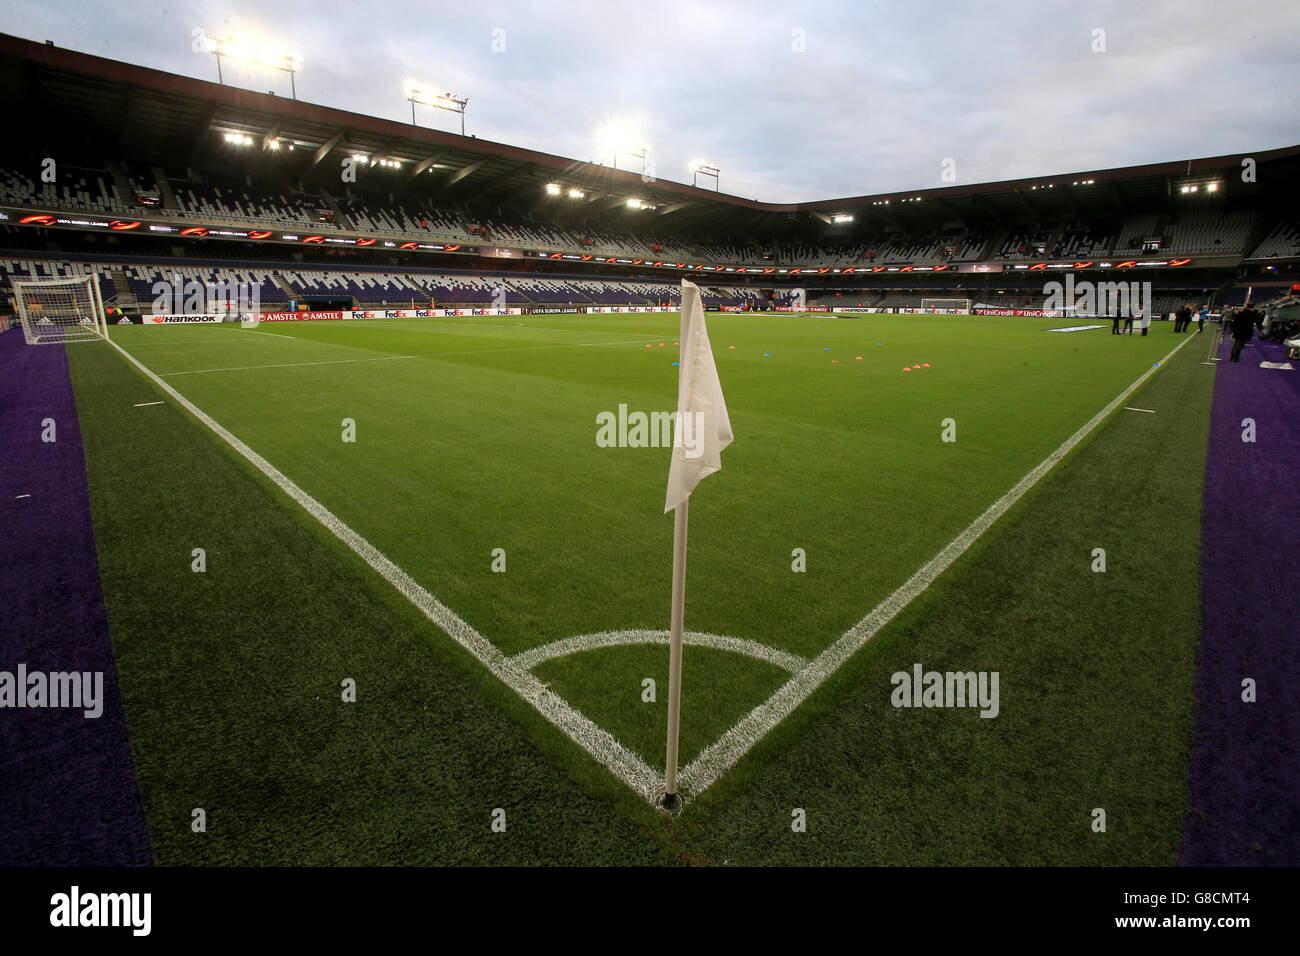 RSC Anderlecht home ground Constant Vanden Stock Stadium Stock Photo